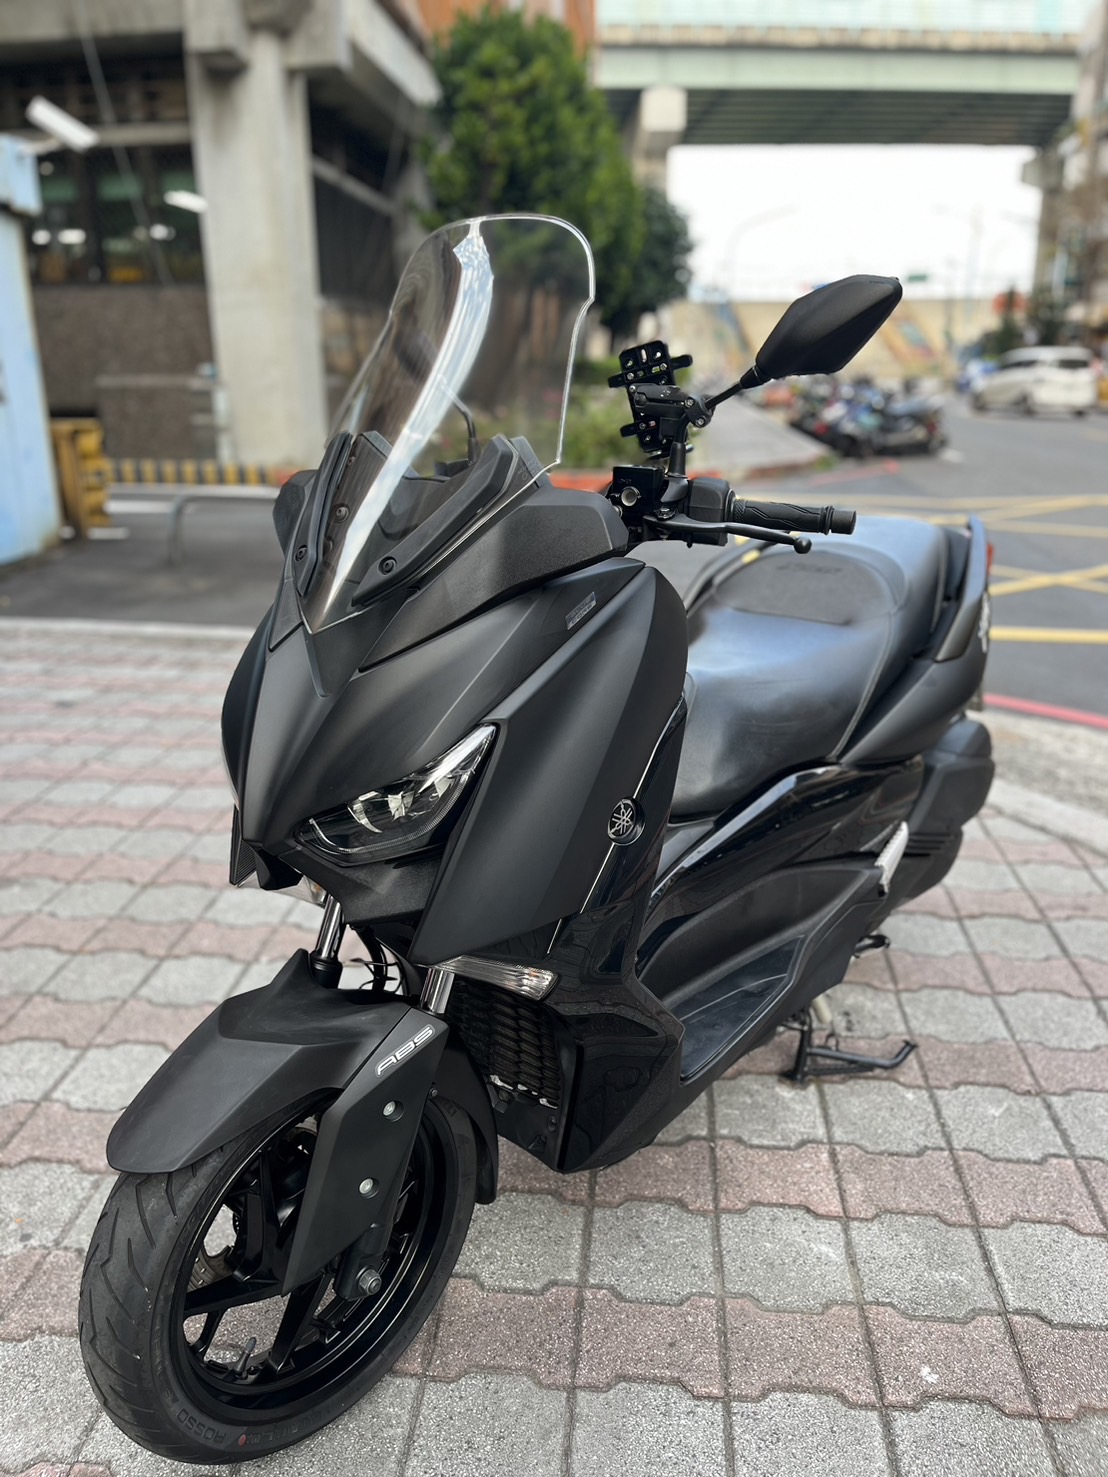 【小木炭想賣車】YAMAHA X-MAX 300 - 「Webike-摩托車市」 不用13萬的黃牌路權車 2018 YAMAHA XMAX 300